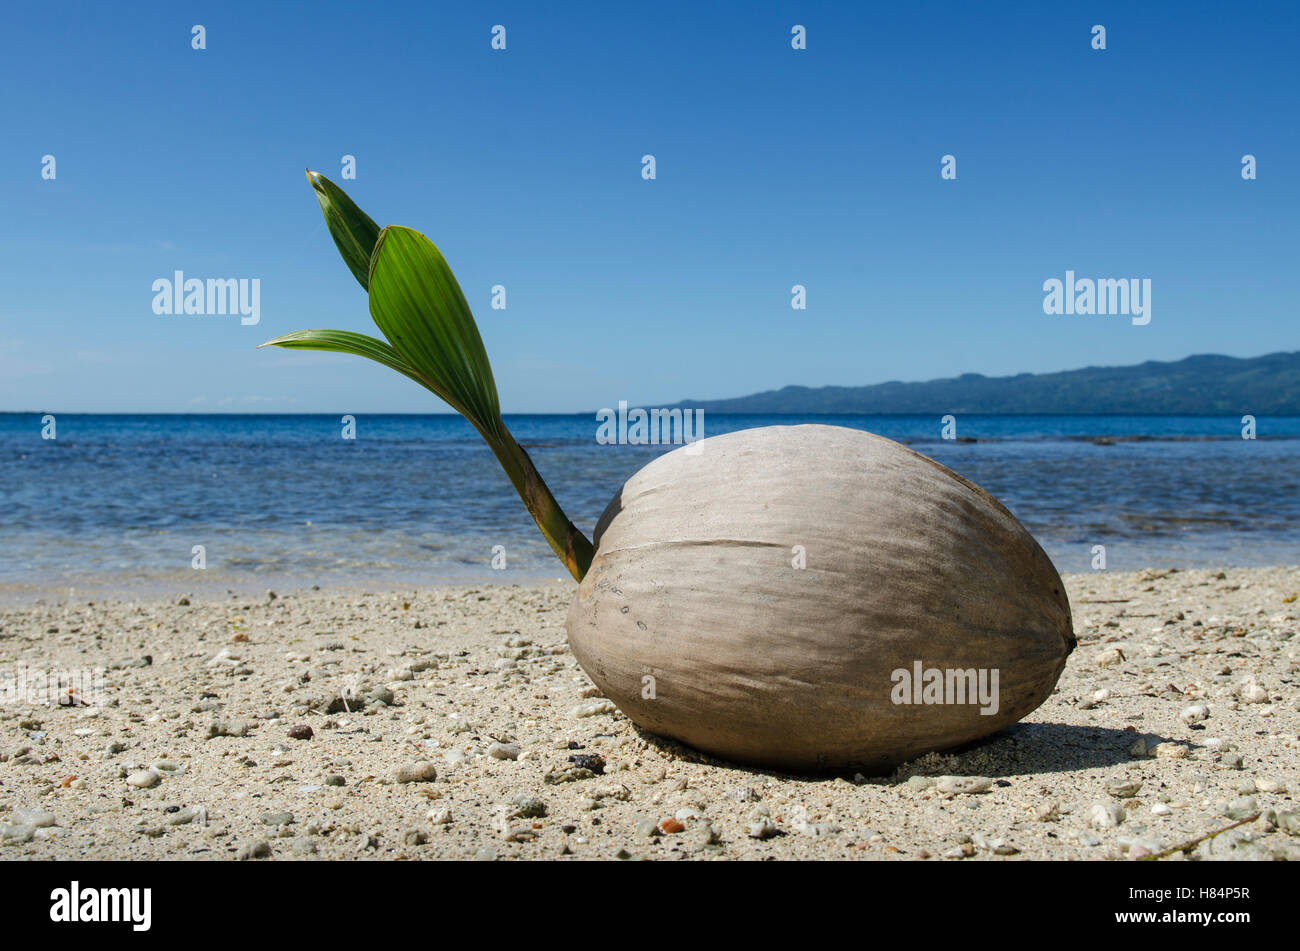 Palma de coco (Cocos nucifera), Fiji Foto de stock